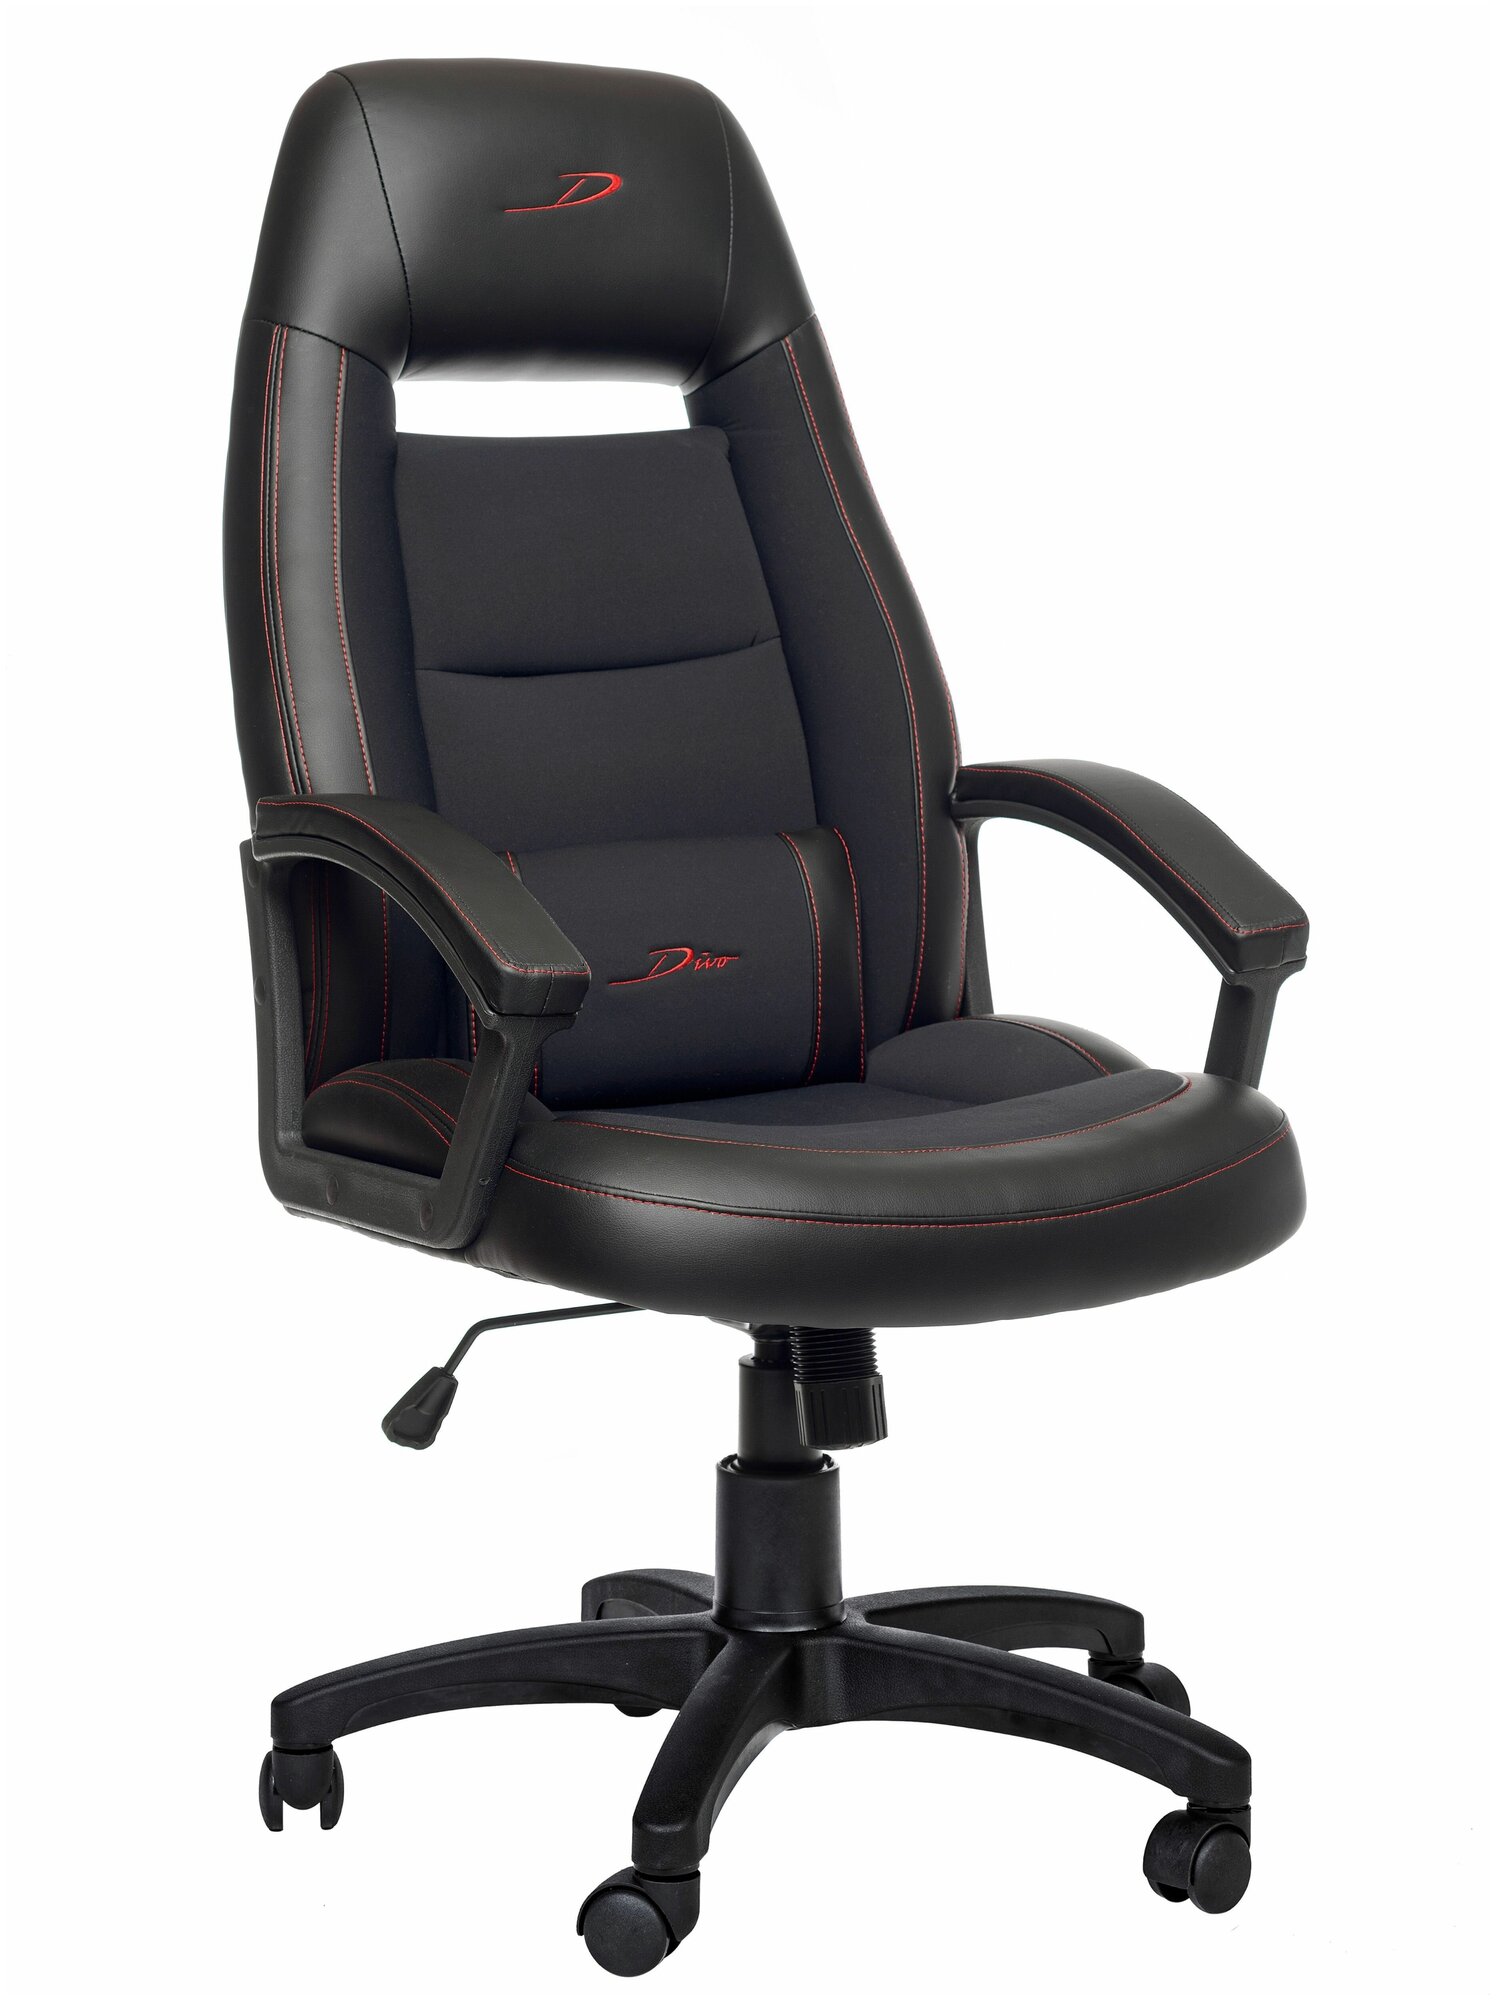 Компьютерное кресло РосКресла Divo игровое, обивка: текстиль/экокожа, цвет: черный